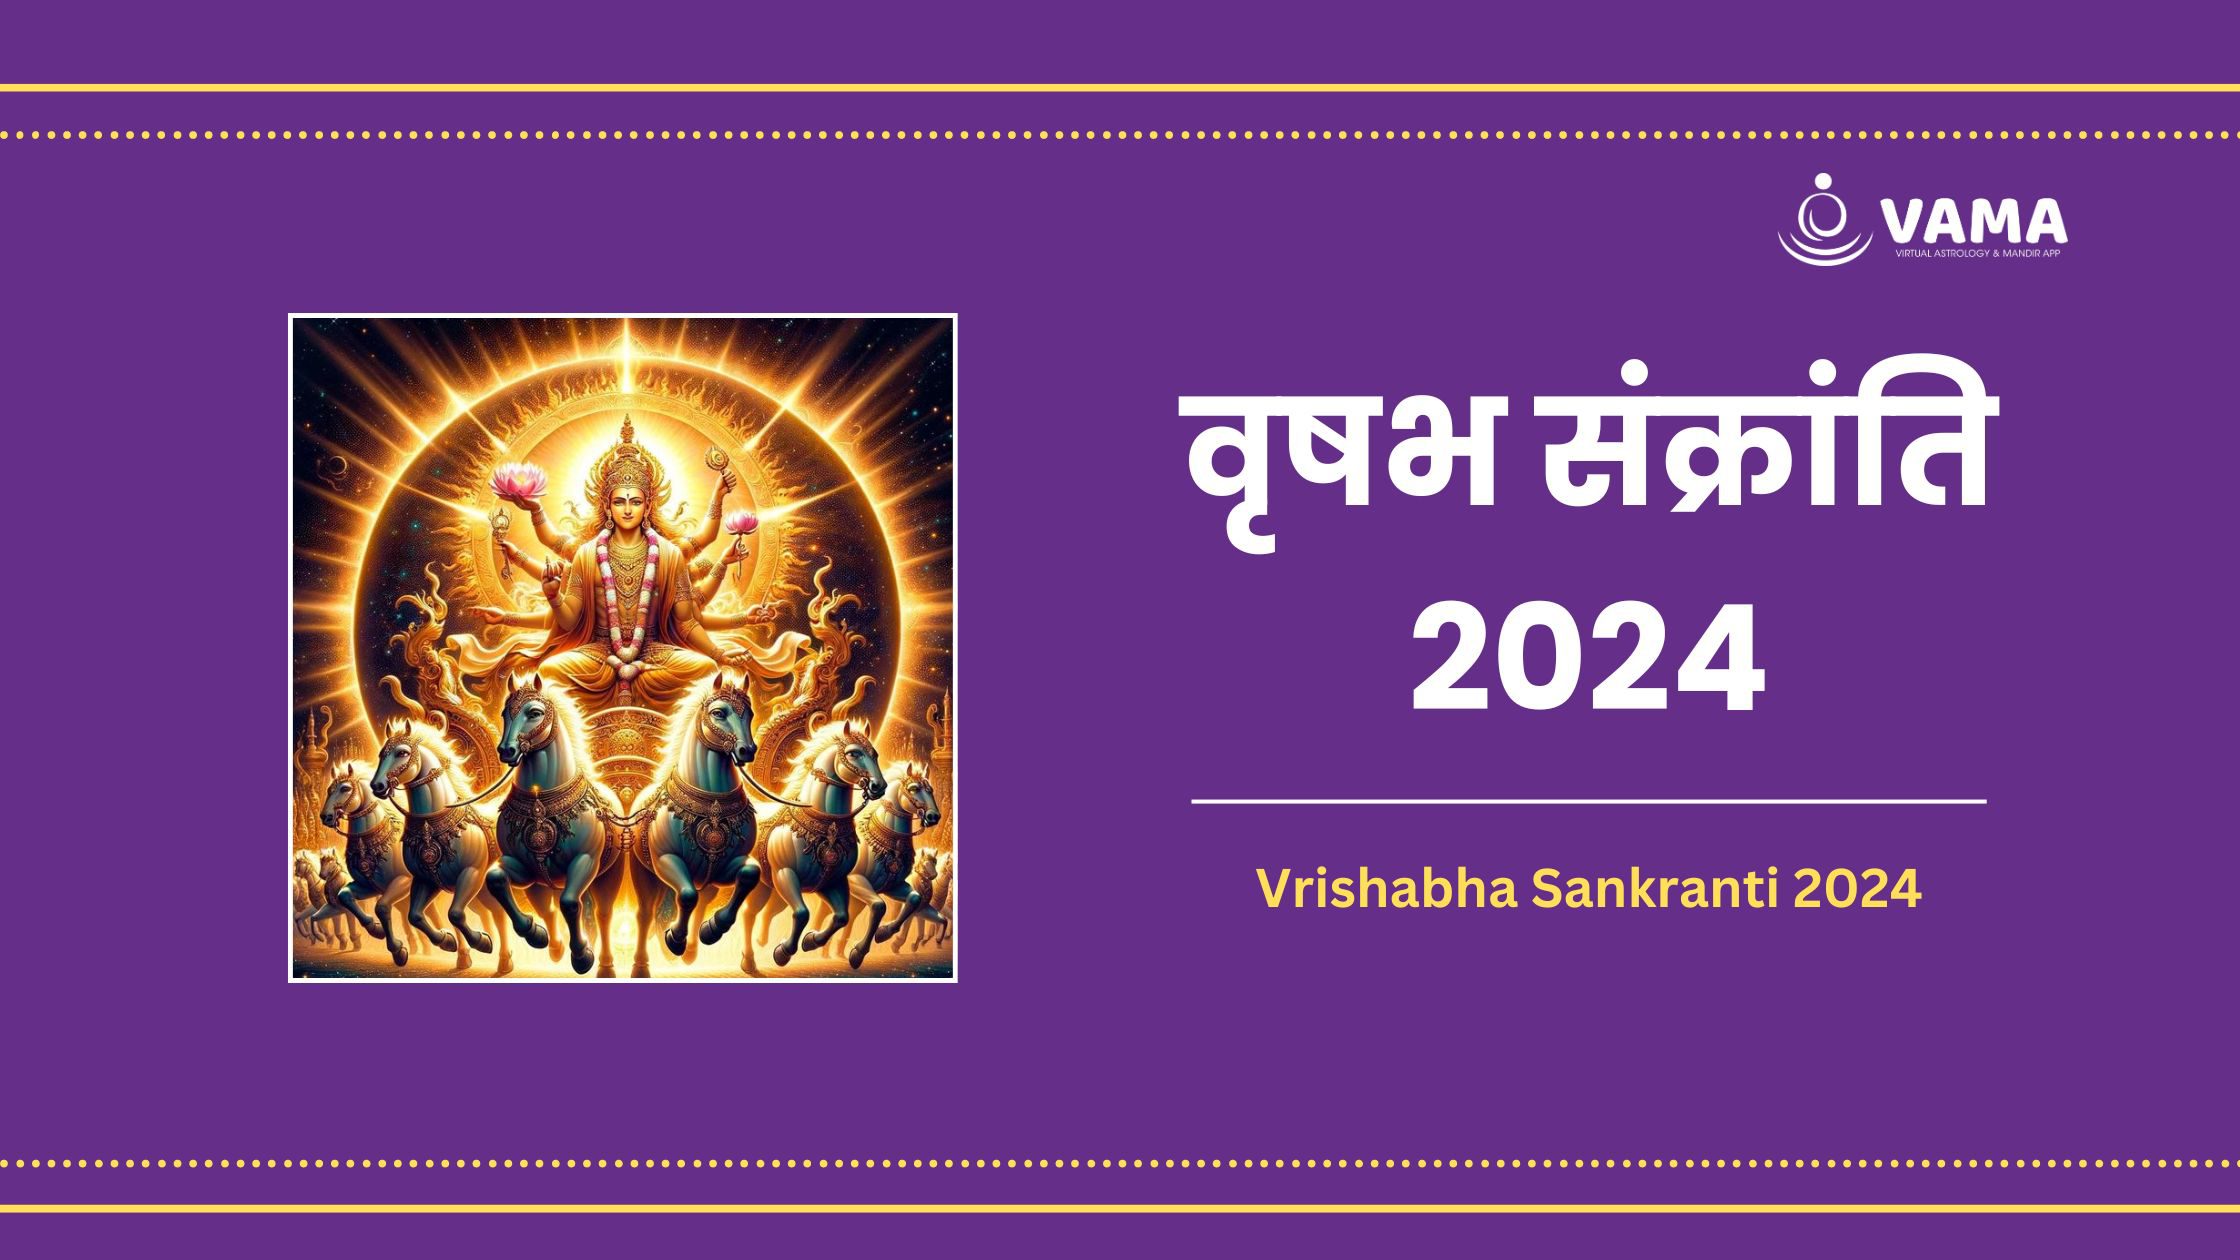 Vrishabha Sankranti 2024